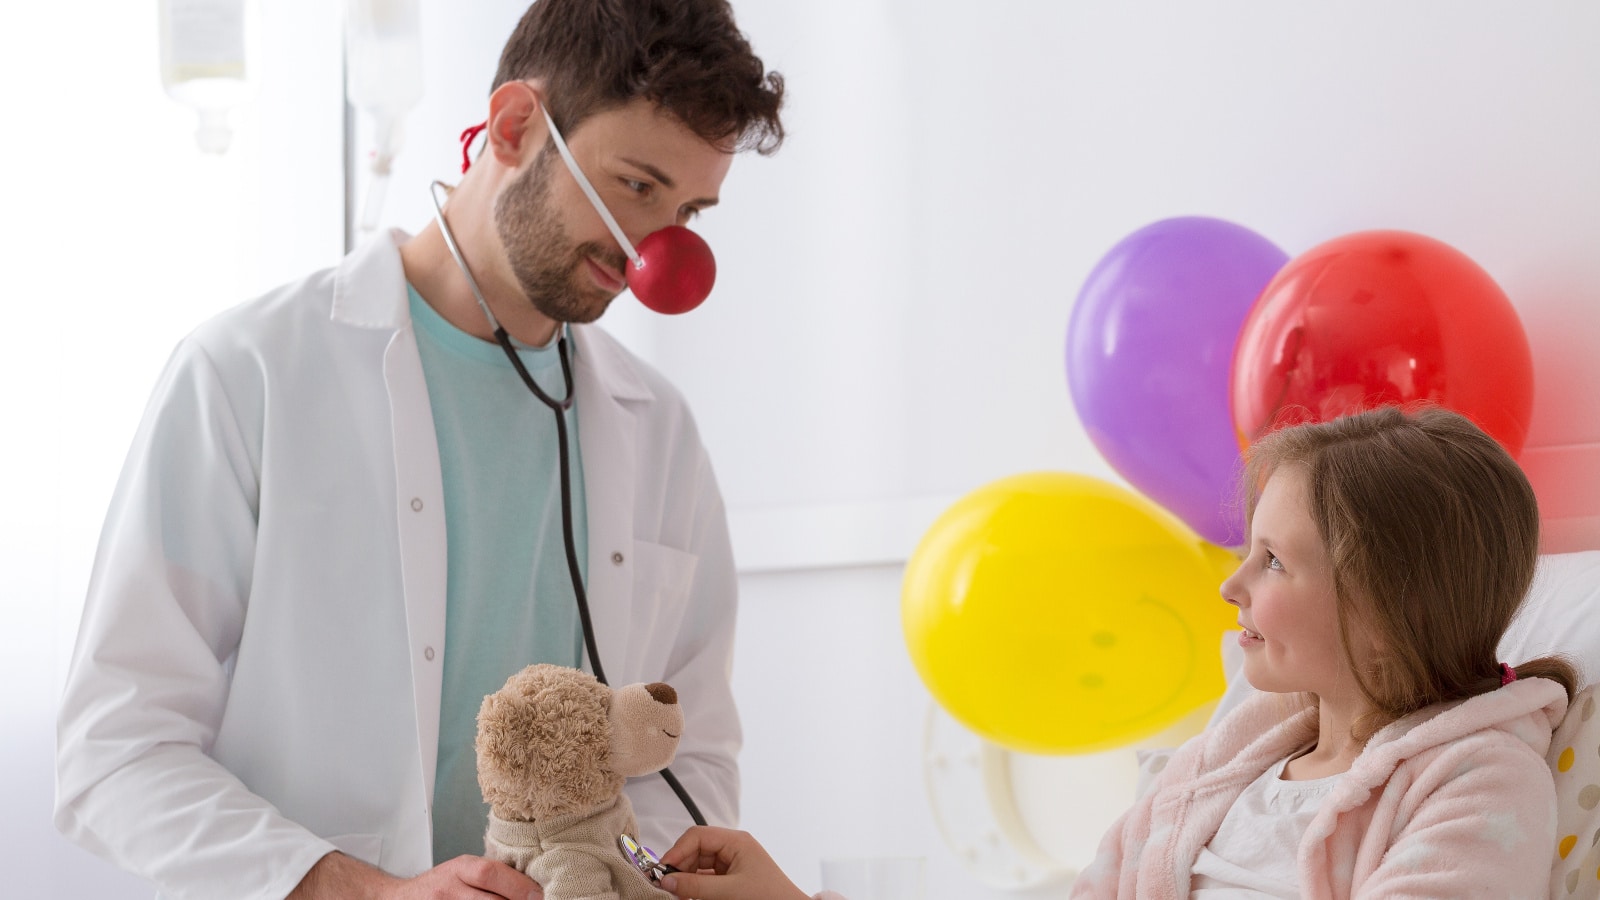 Clown ospedalieri nei reparti pediatrici: gli effetti sul benessere psicologico